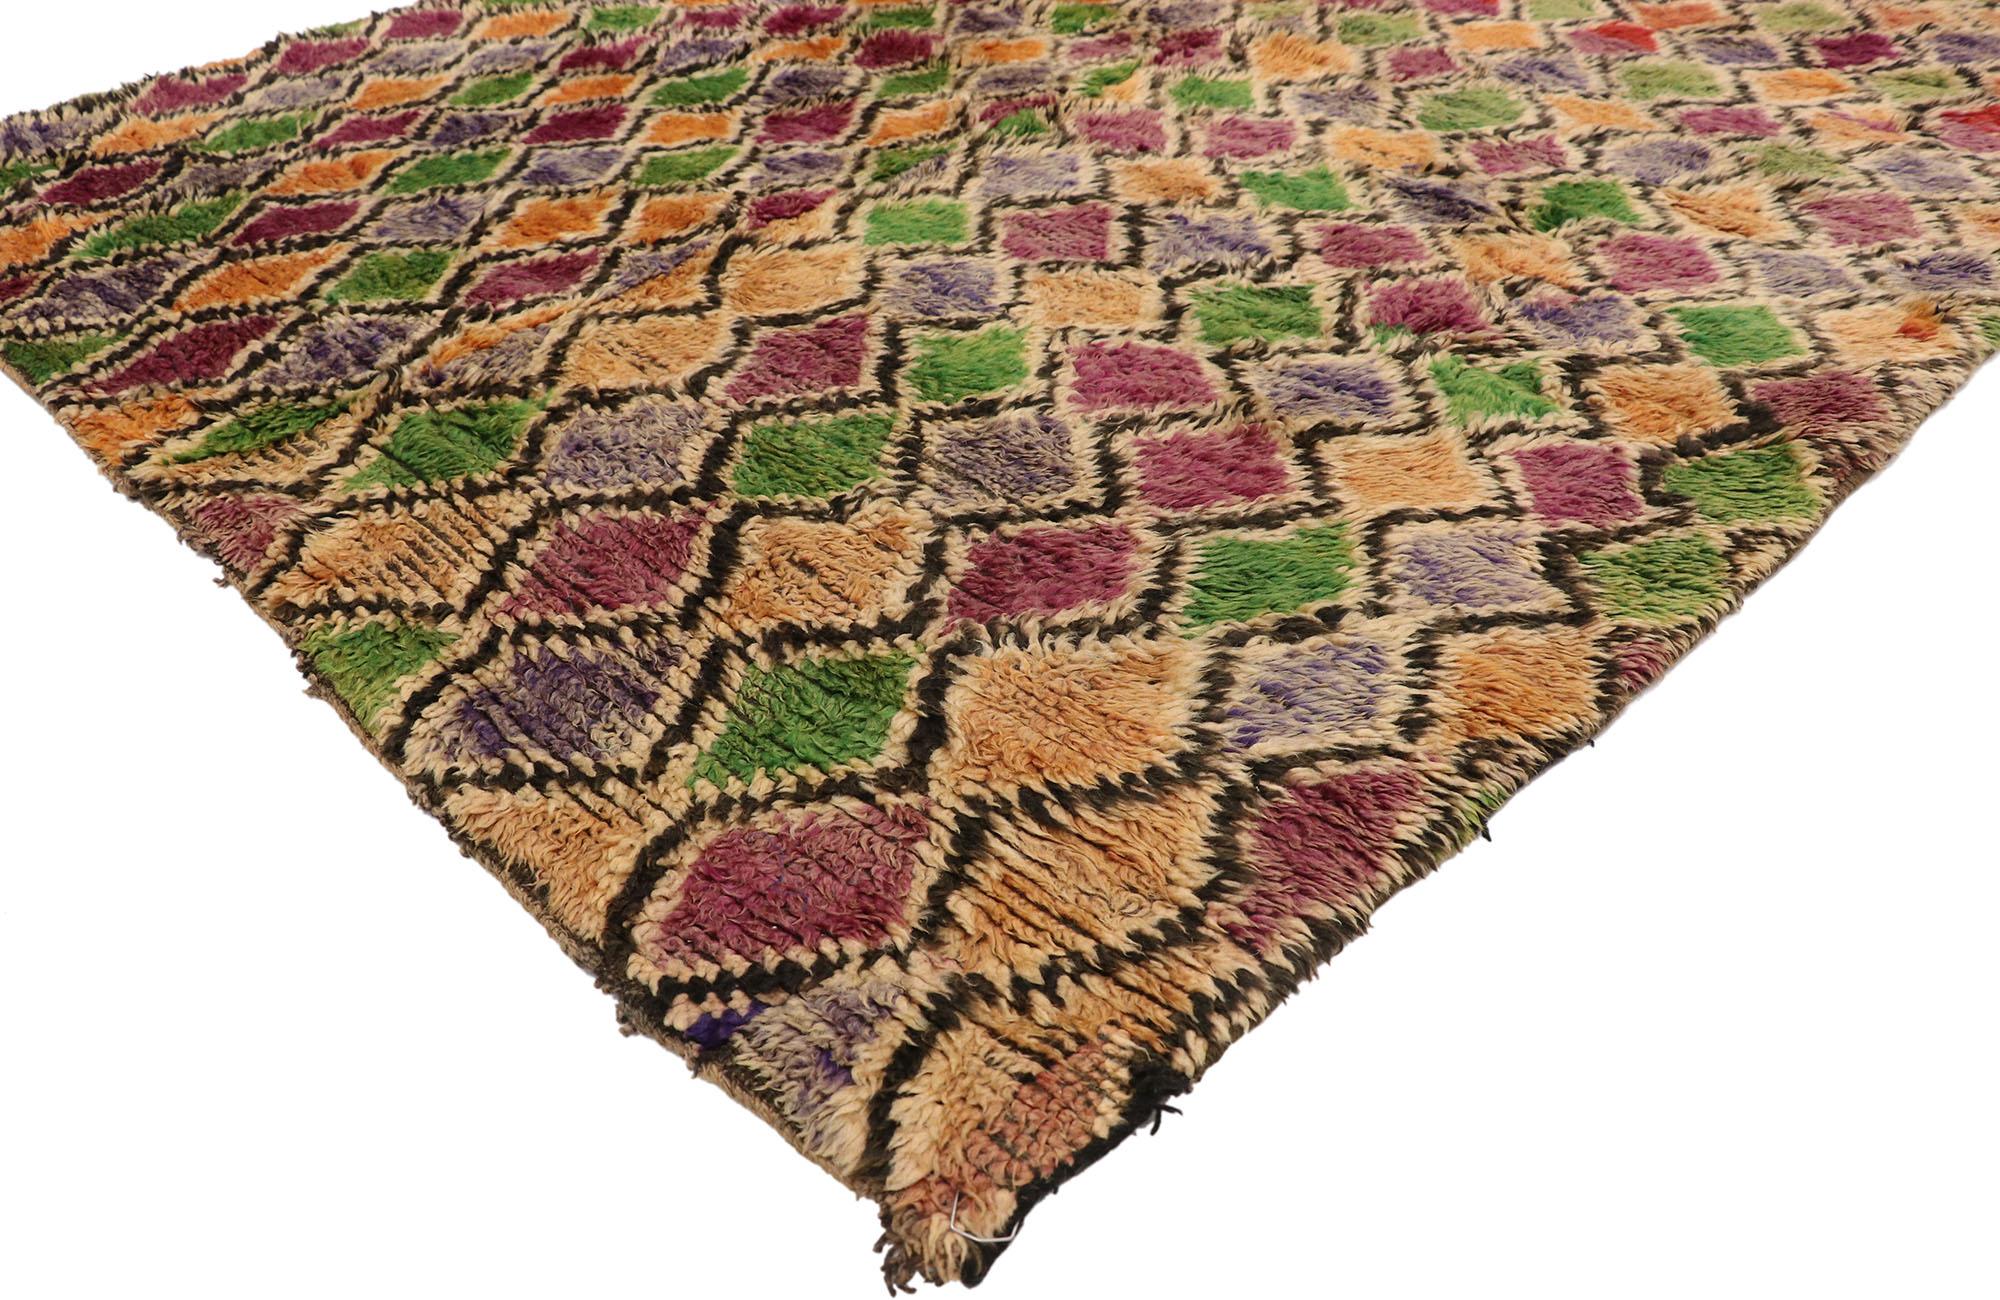 21027, tapis marocain berbère vintage avec style bohème 04'11 x 08'10. Ce tapis marocain berbère vintage en laine noué à la main présente un motif de treillis diamantaire sur toute la surface, composé de diamants concentriques. Bien que faussement